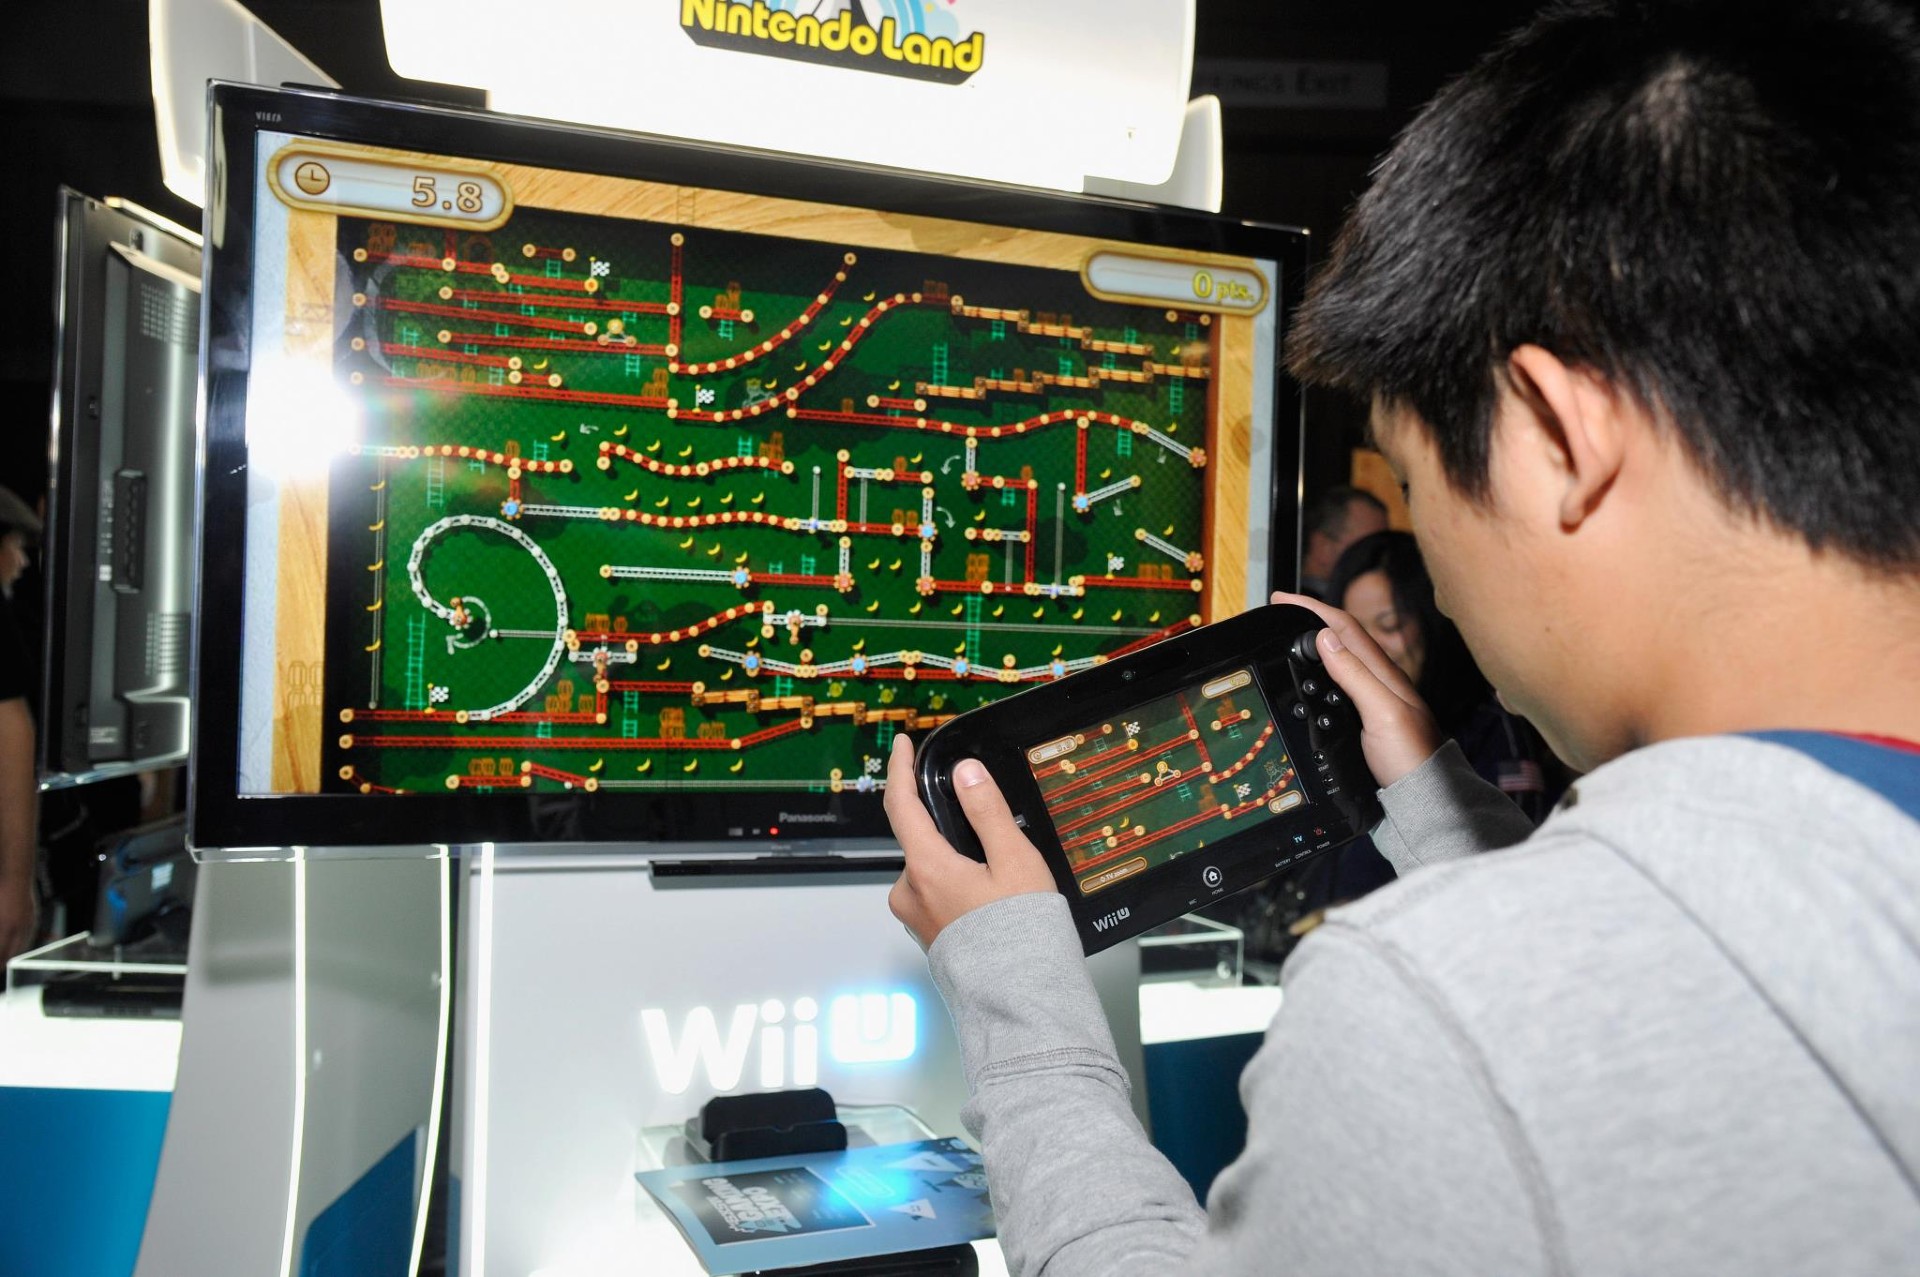 แฟนเกมชาวญี่ปุ่นไม่พอใจ หลังจาก Nintendo เตรียมปิดระบบ Nintendo eShop ของ 3DS กับ Wii U